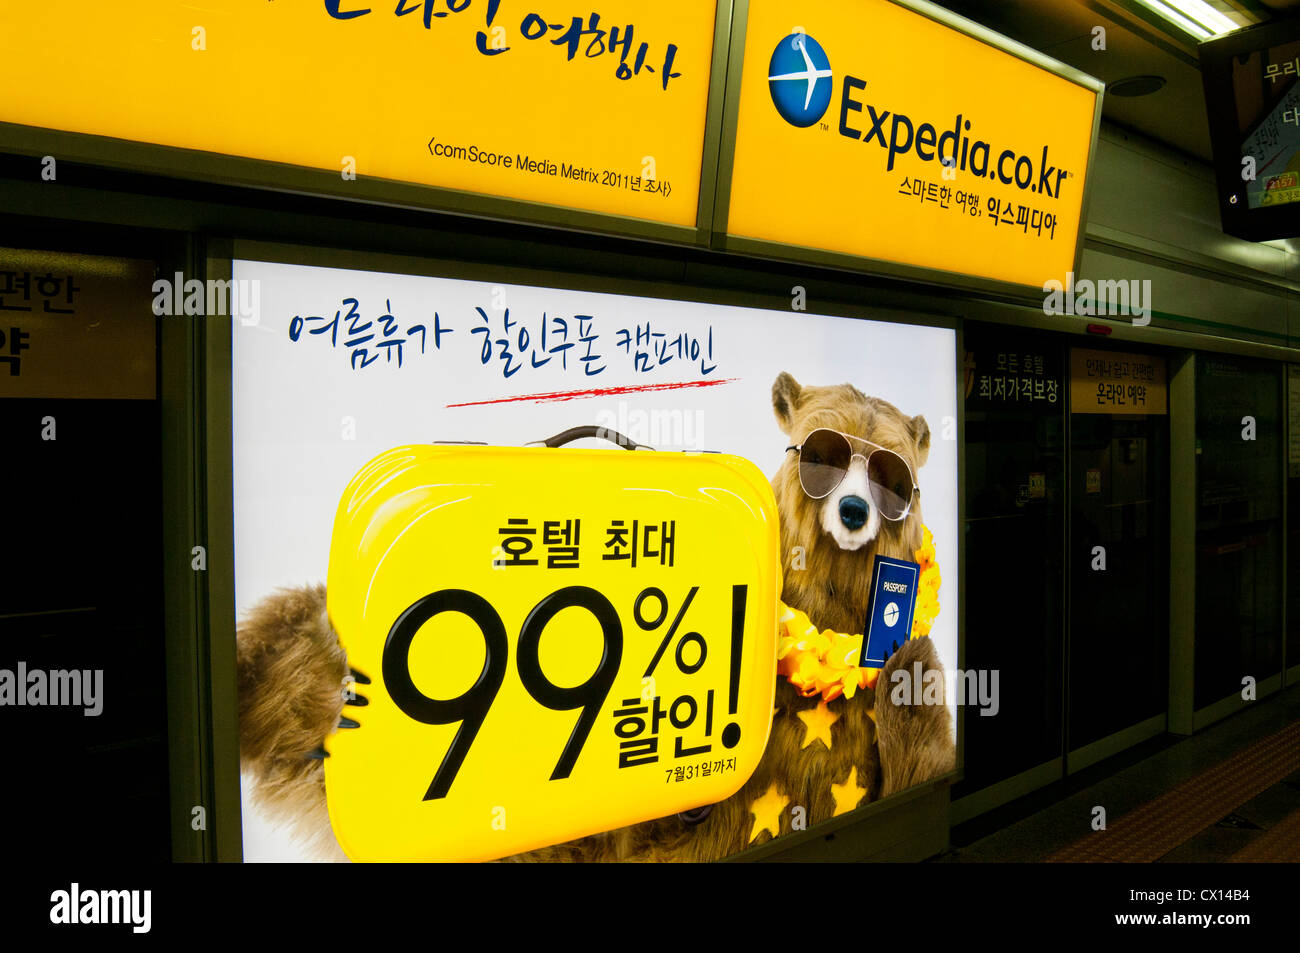 Expedia.Co.kr Anzeige auf Plattform in der u-Bahnstation in Seoul, Korea Stockfoto